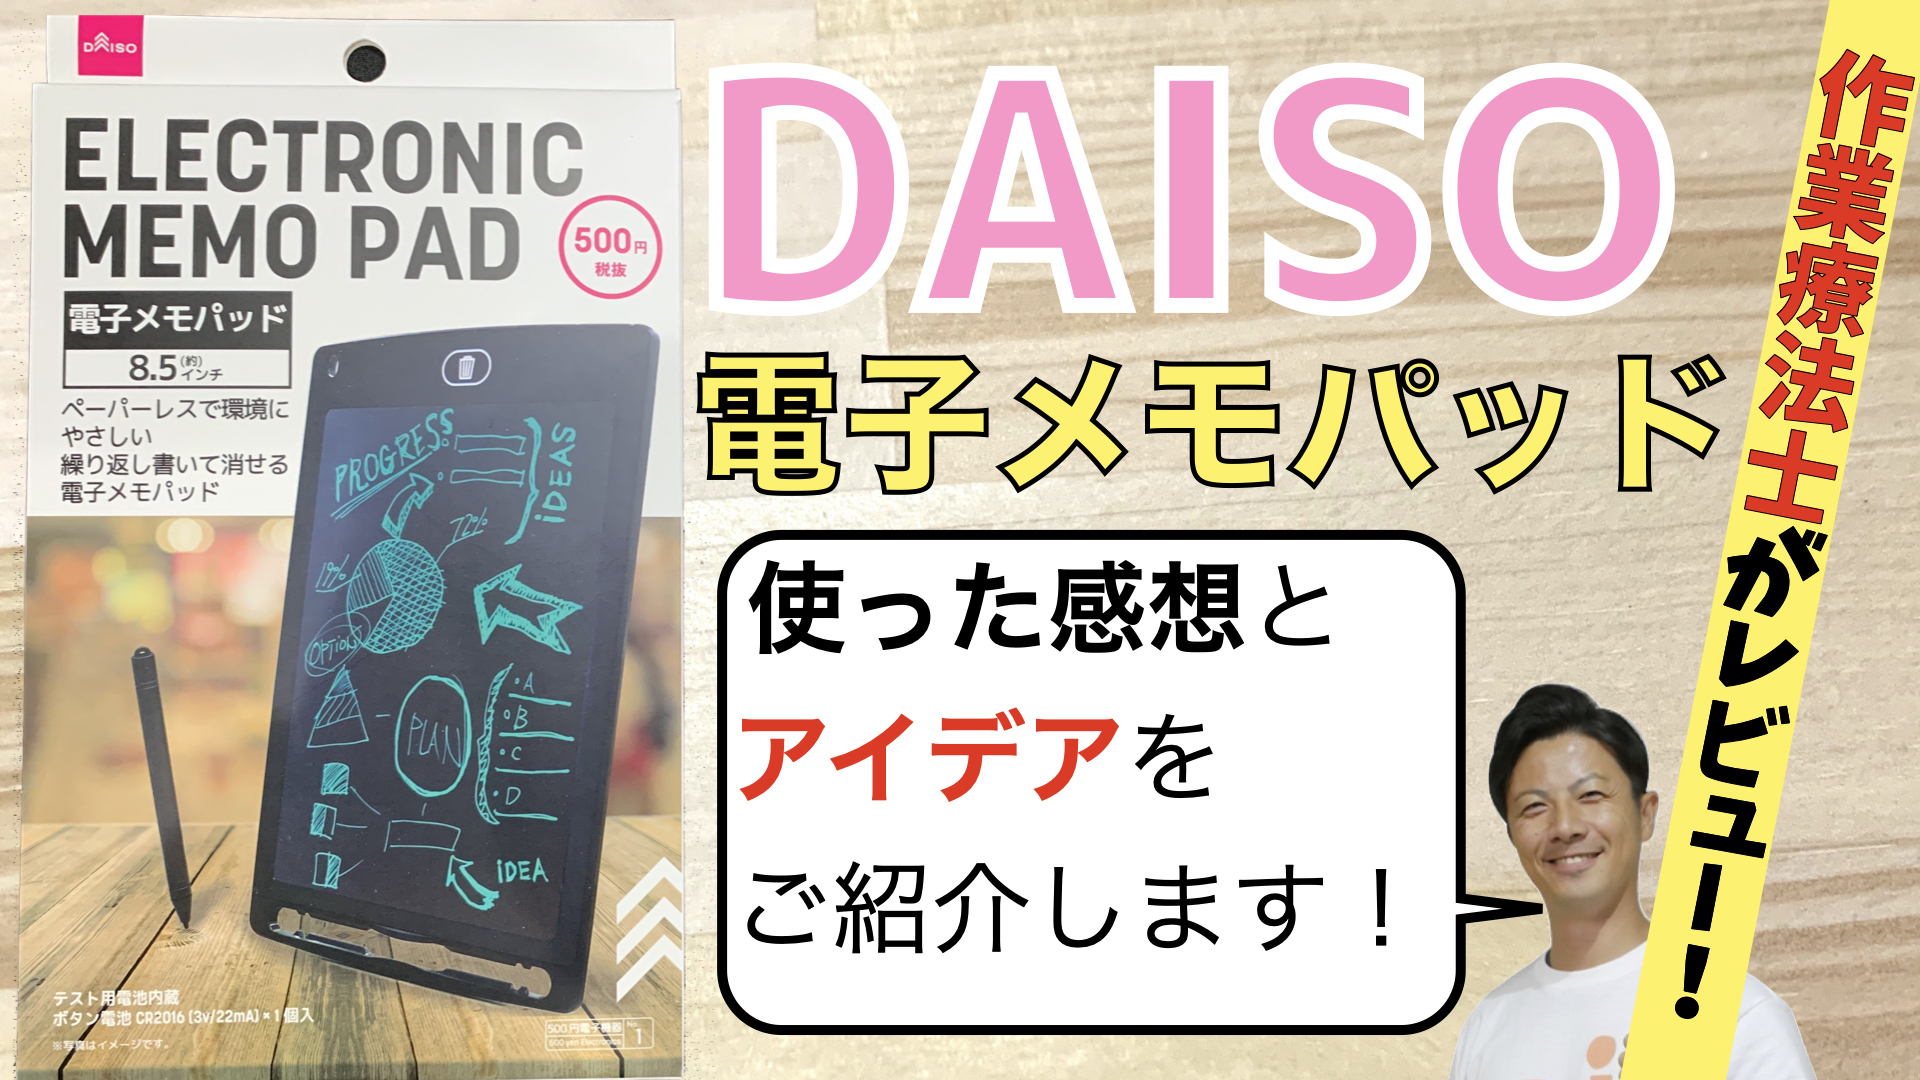 ダイソー・DAISO【電子メモパッド】の使った感想と活用アイデアをご紹介 | アイデアわくわくリハビリ